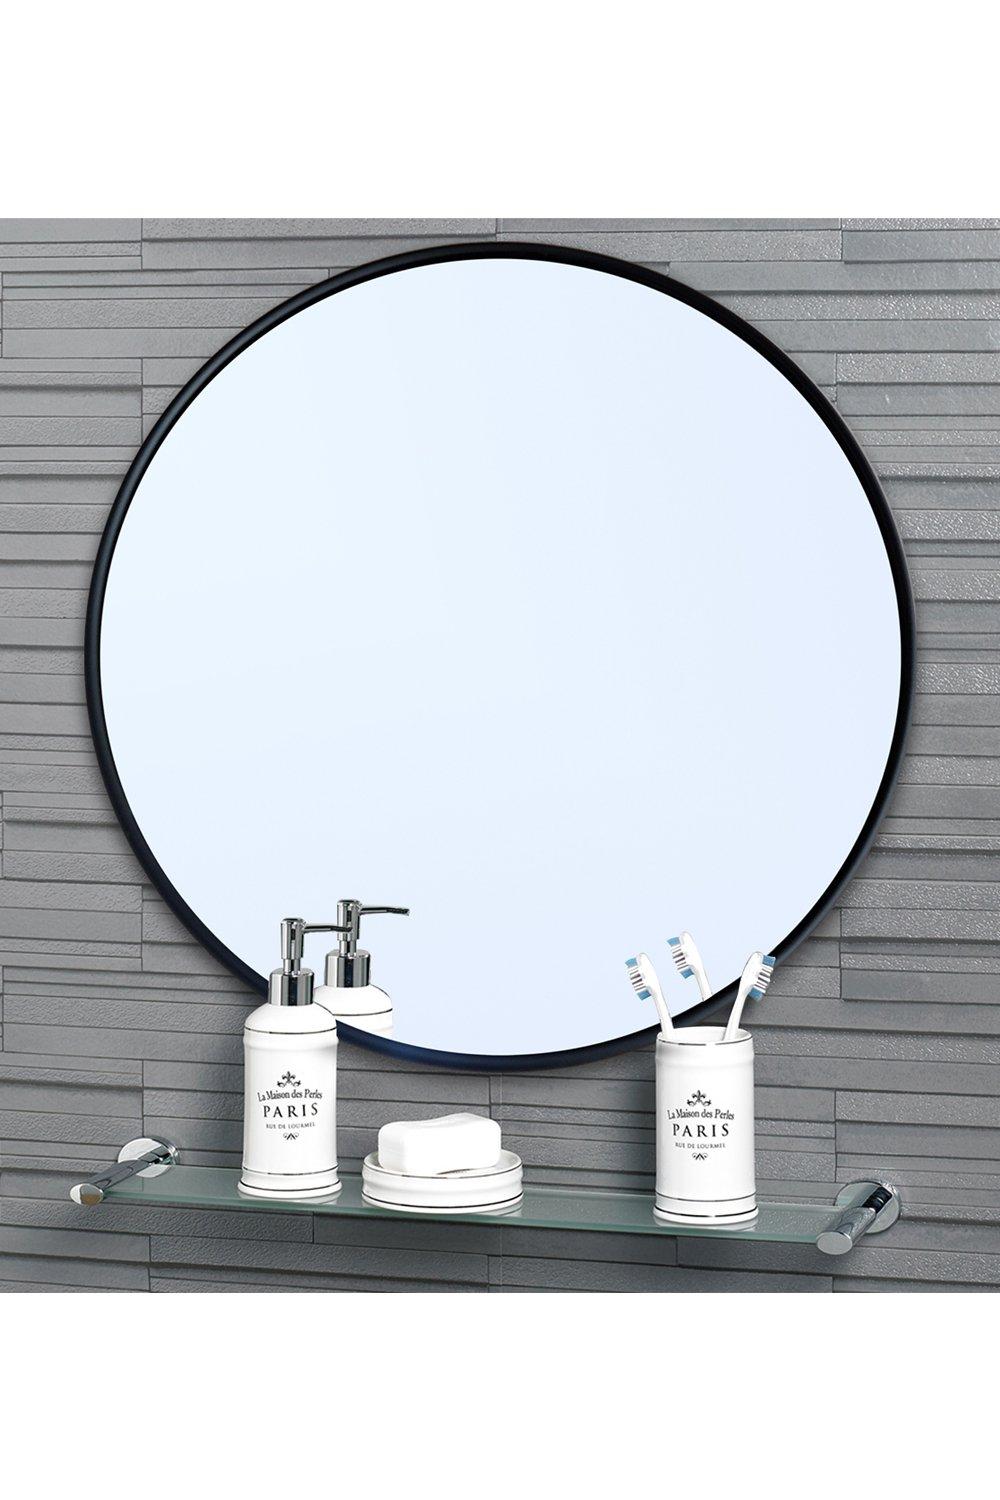 'Portabello' Round Mirror Small 40cm Dia